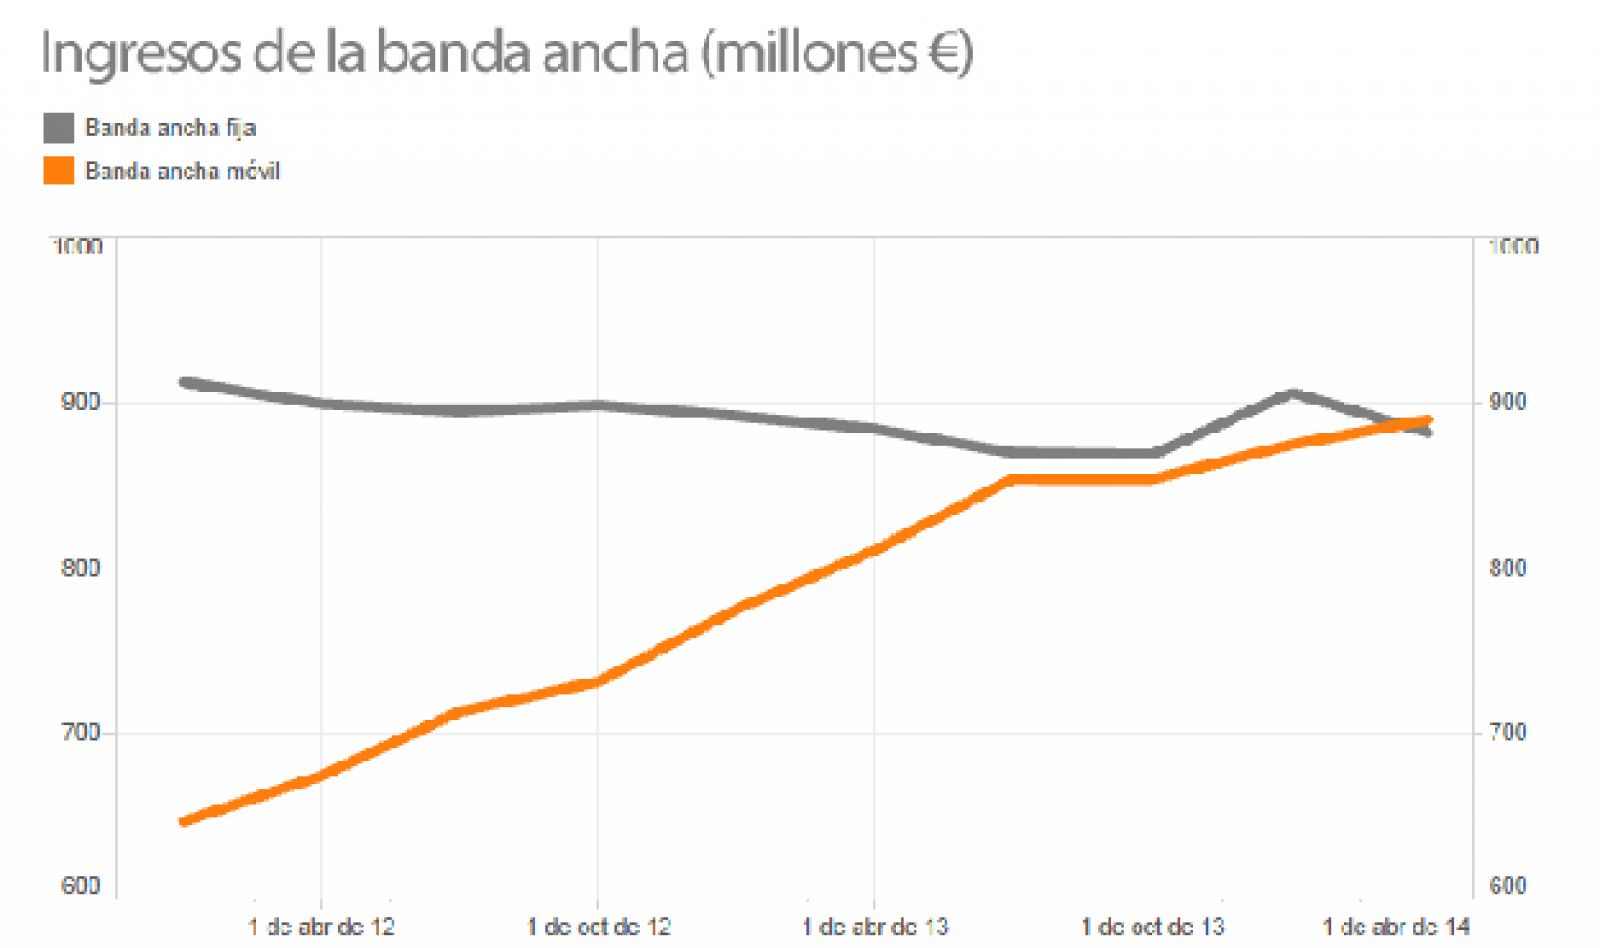 Ingresos de la banda ancha en España en millones de euros